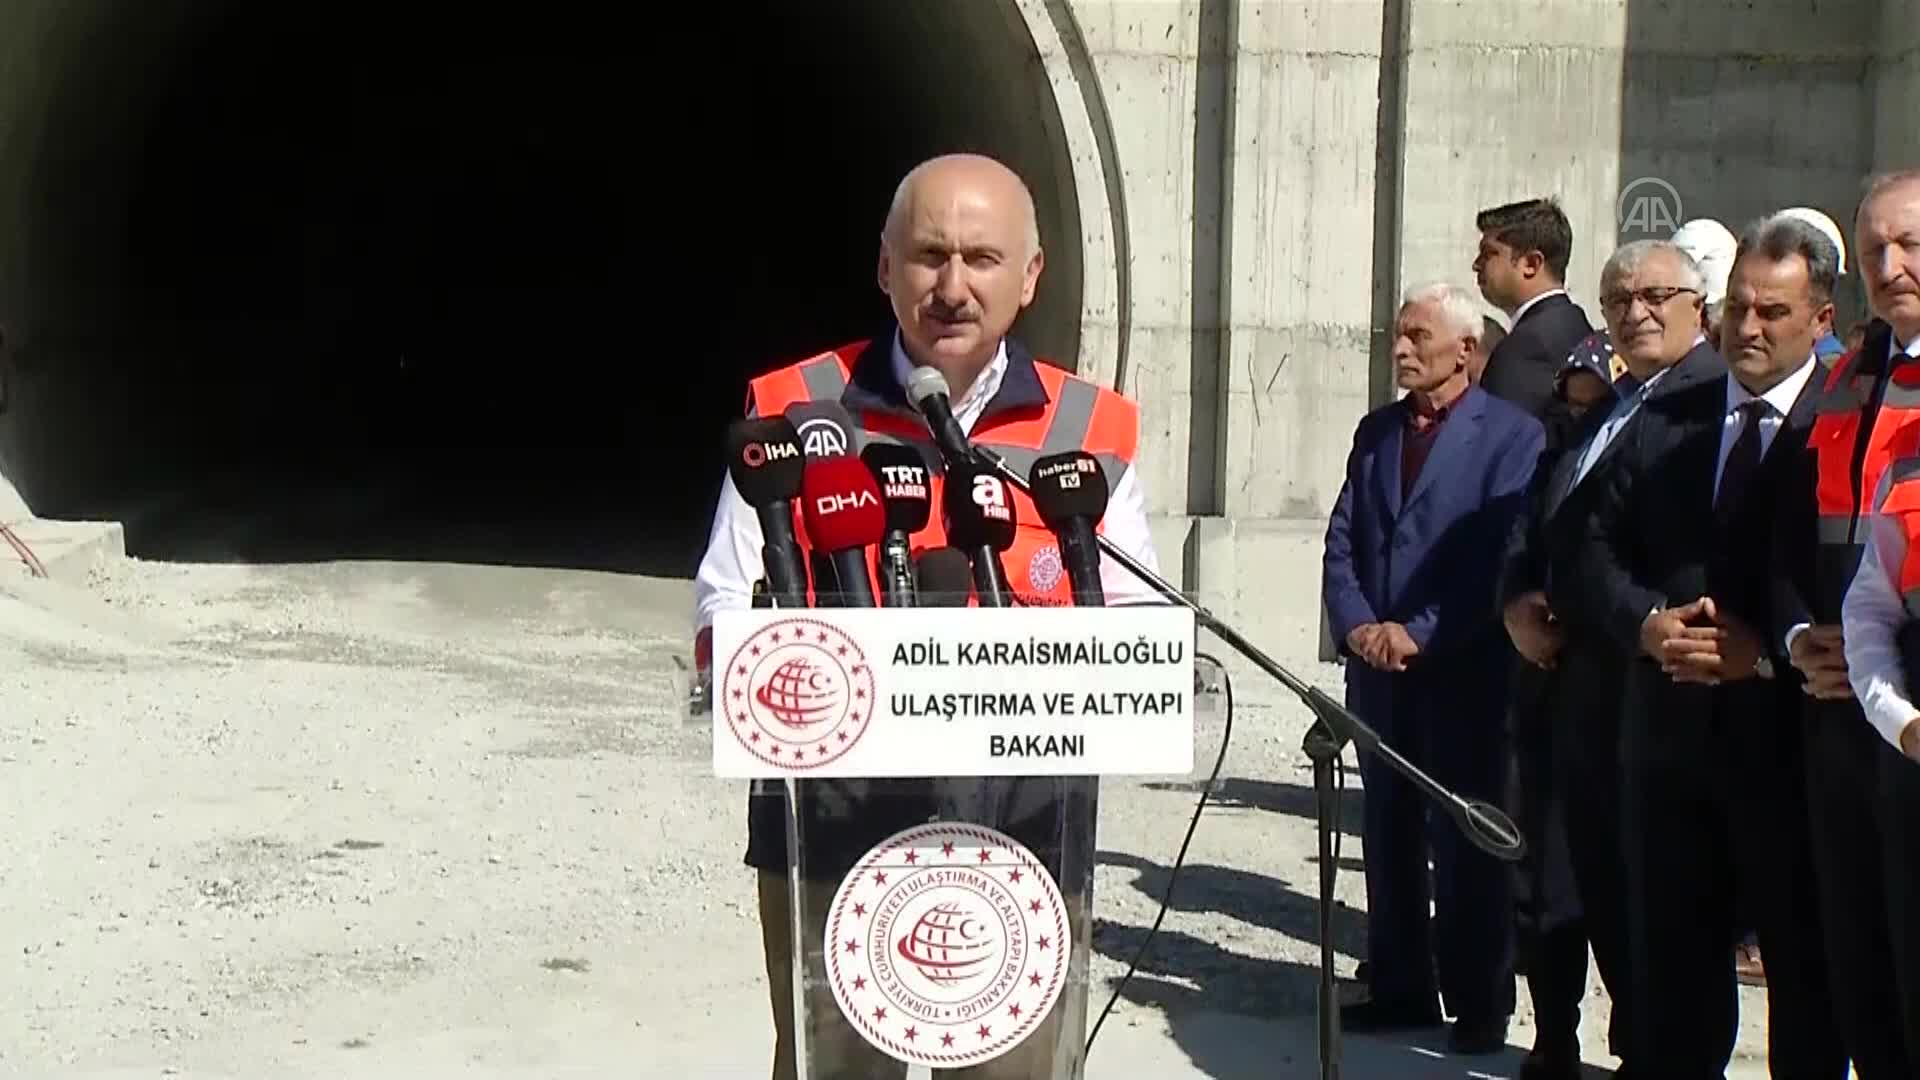 Ulaştırma ve Altyapı Bakanı Adil Karaismailoğlu, yeni Zigana Tüneli inşaatında incelemelerde bulundu: